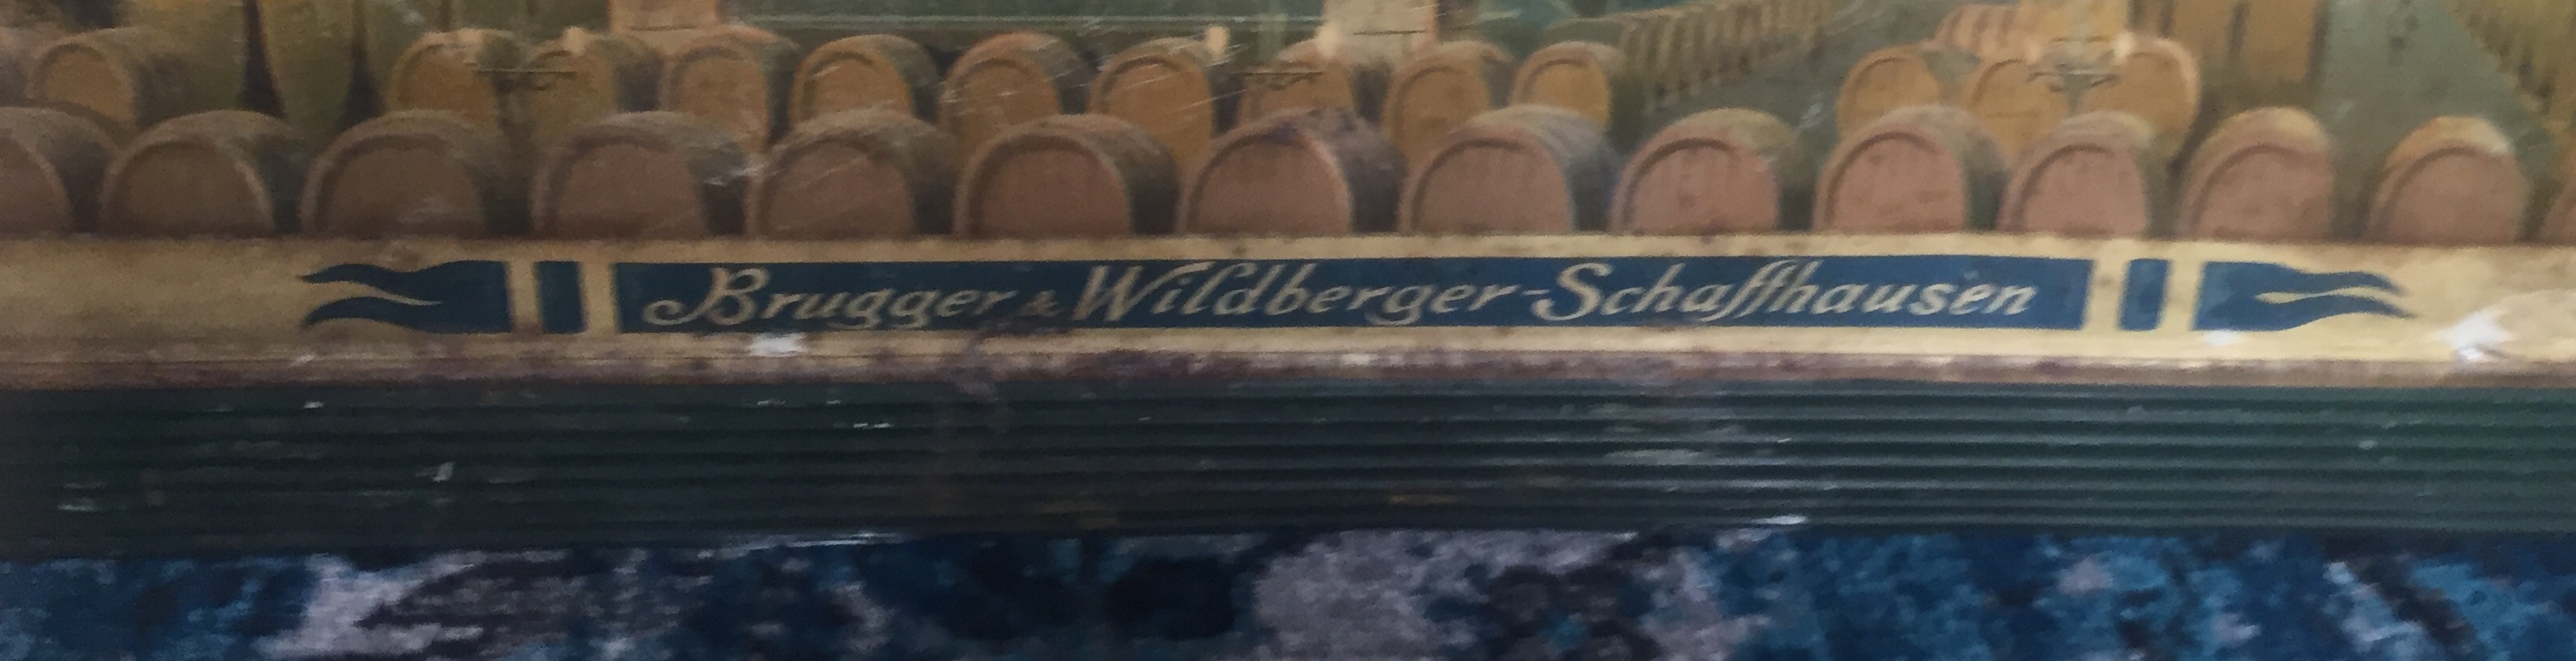 Blechschild Brugger und Wildberger